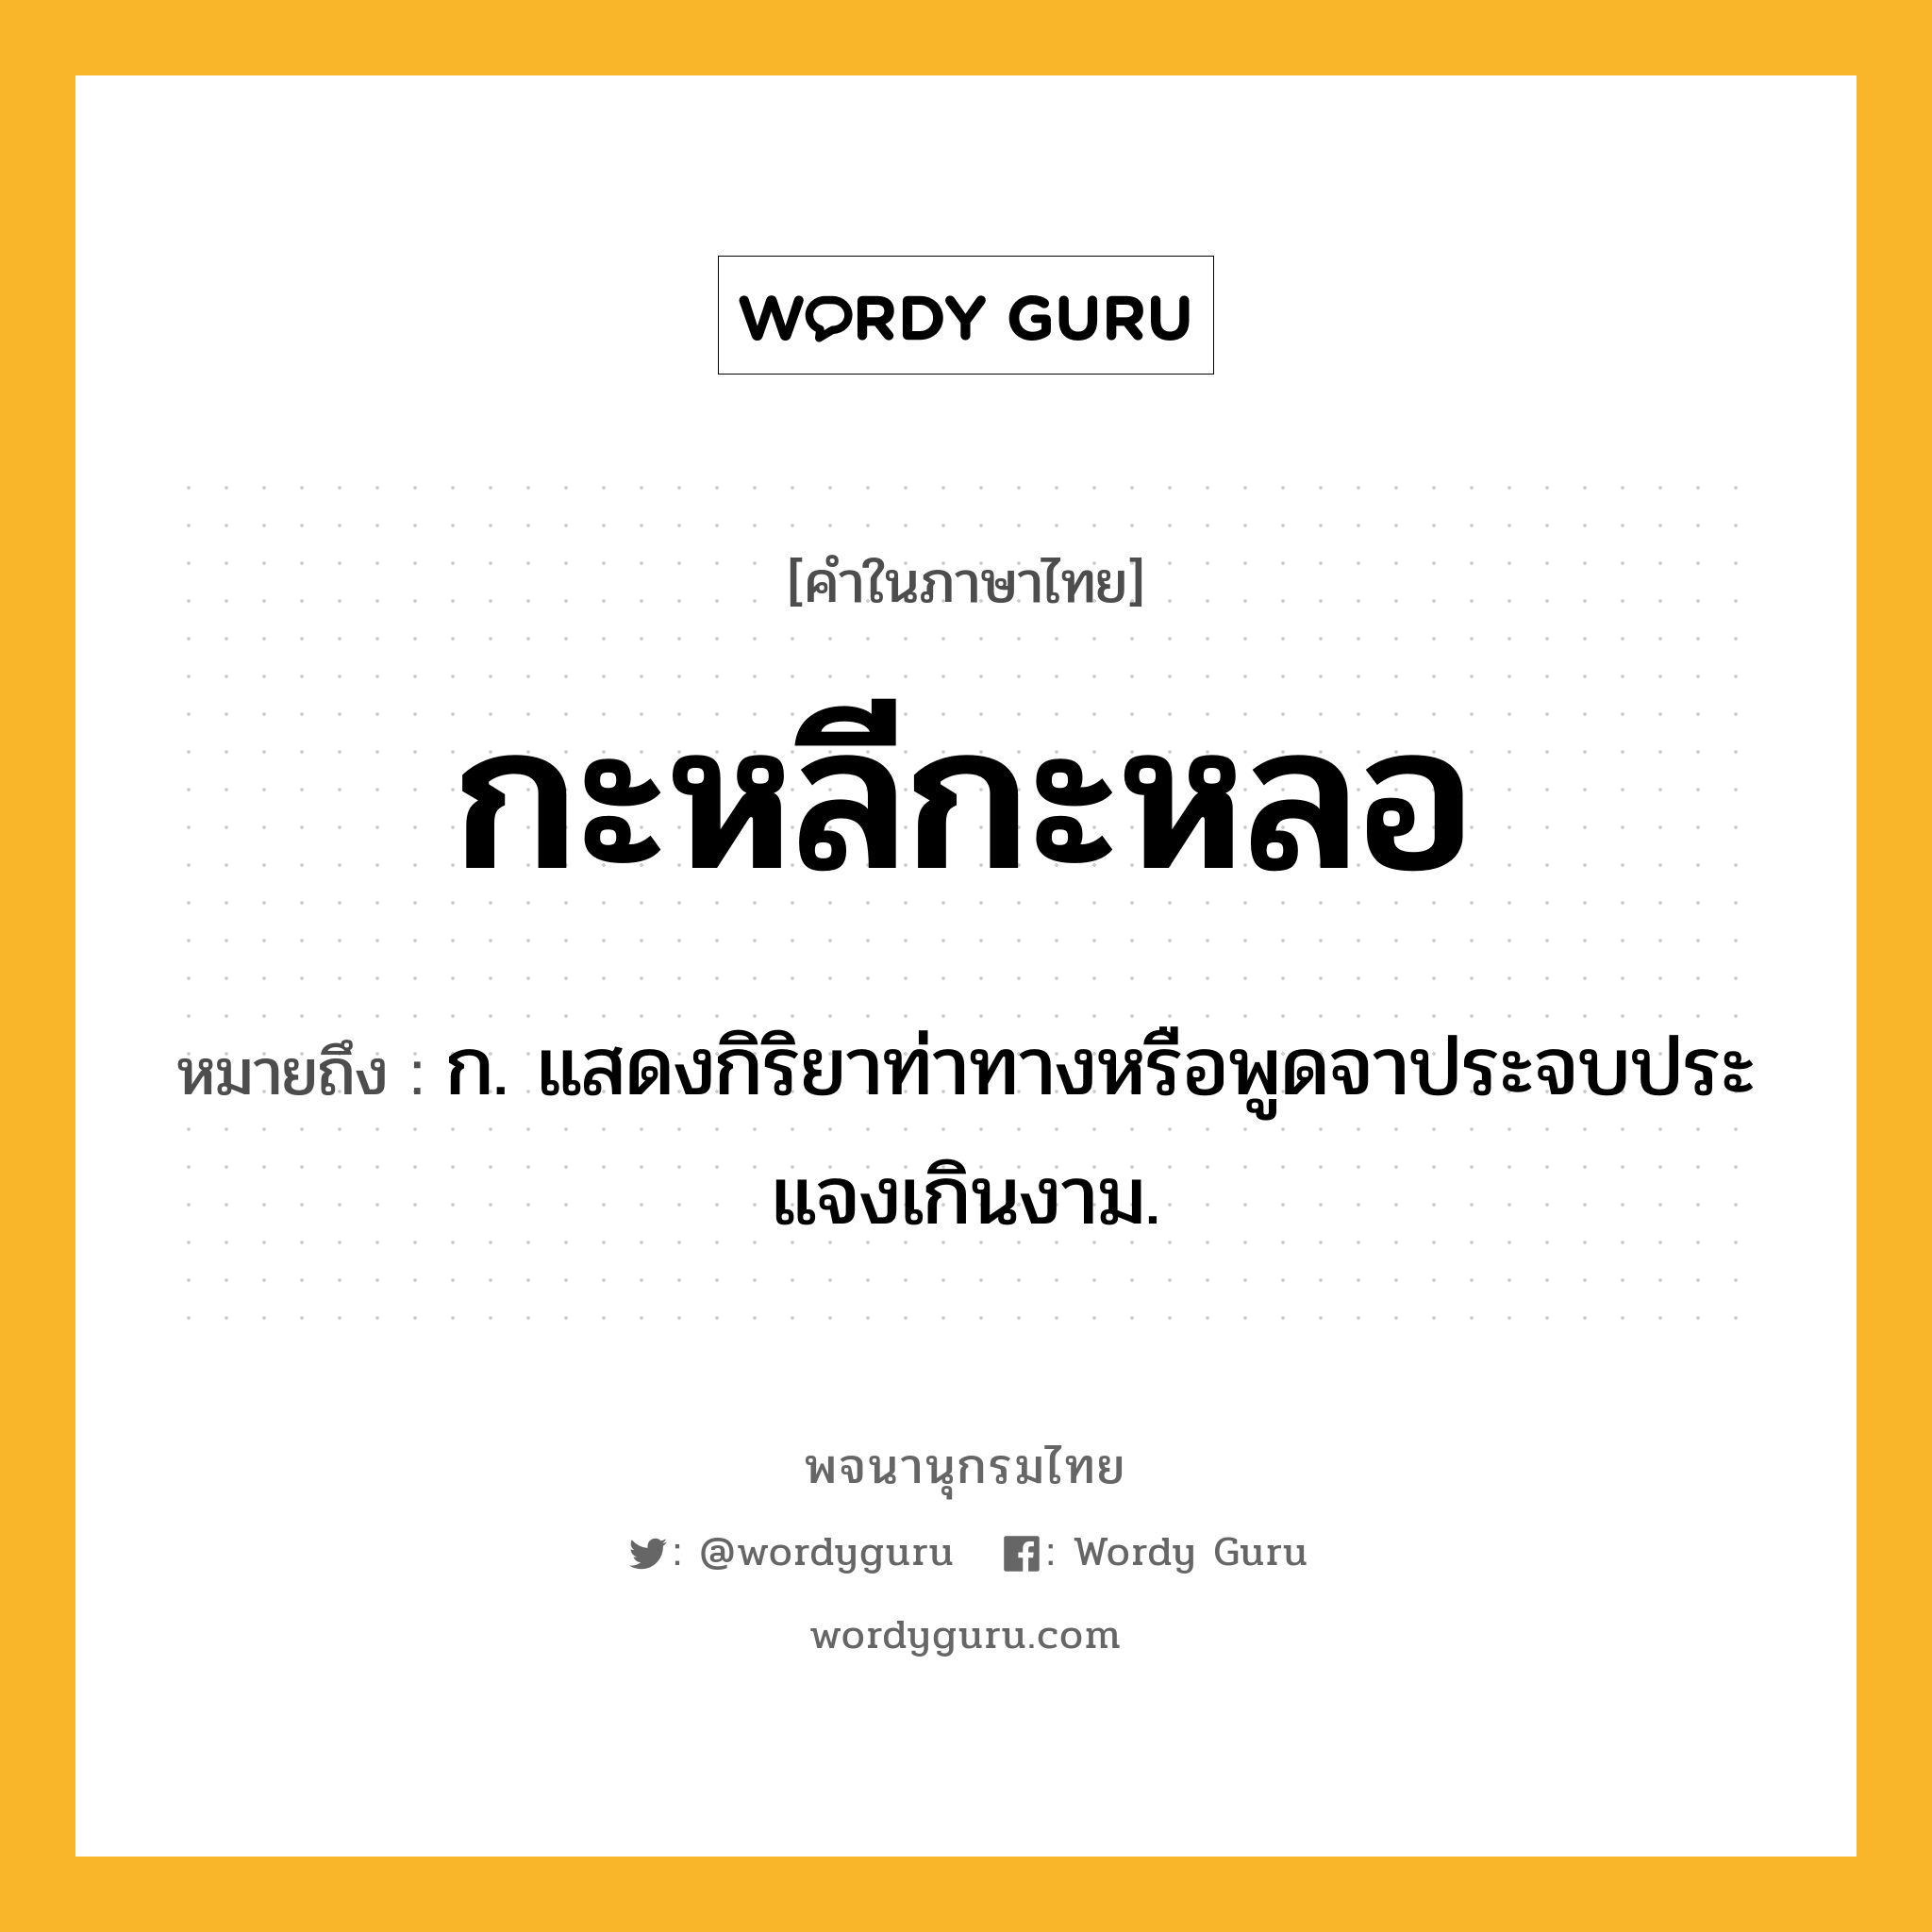 กะหลีกะหลอ หมายถึงอะไร?, คำในภาษาไทย กะหลีกะหลอ หมายถึง ก. แสดงกิริยาท่าทางหรือพูดจาประจบประแจงเกินงาม.